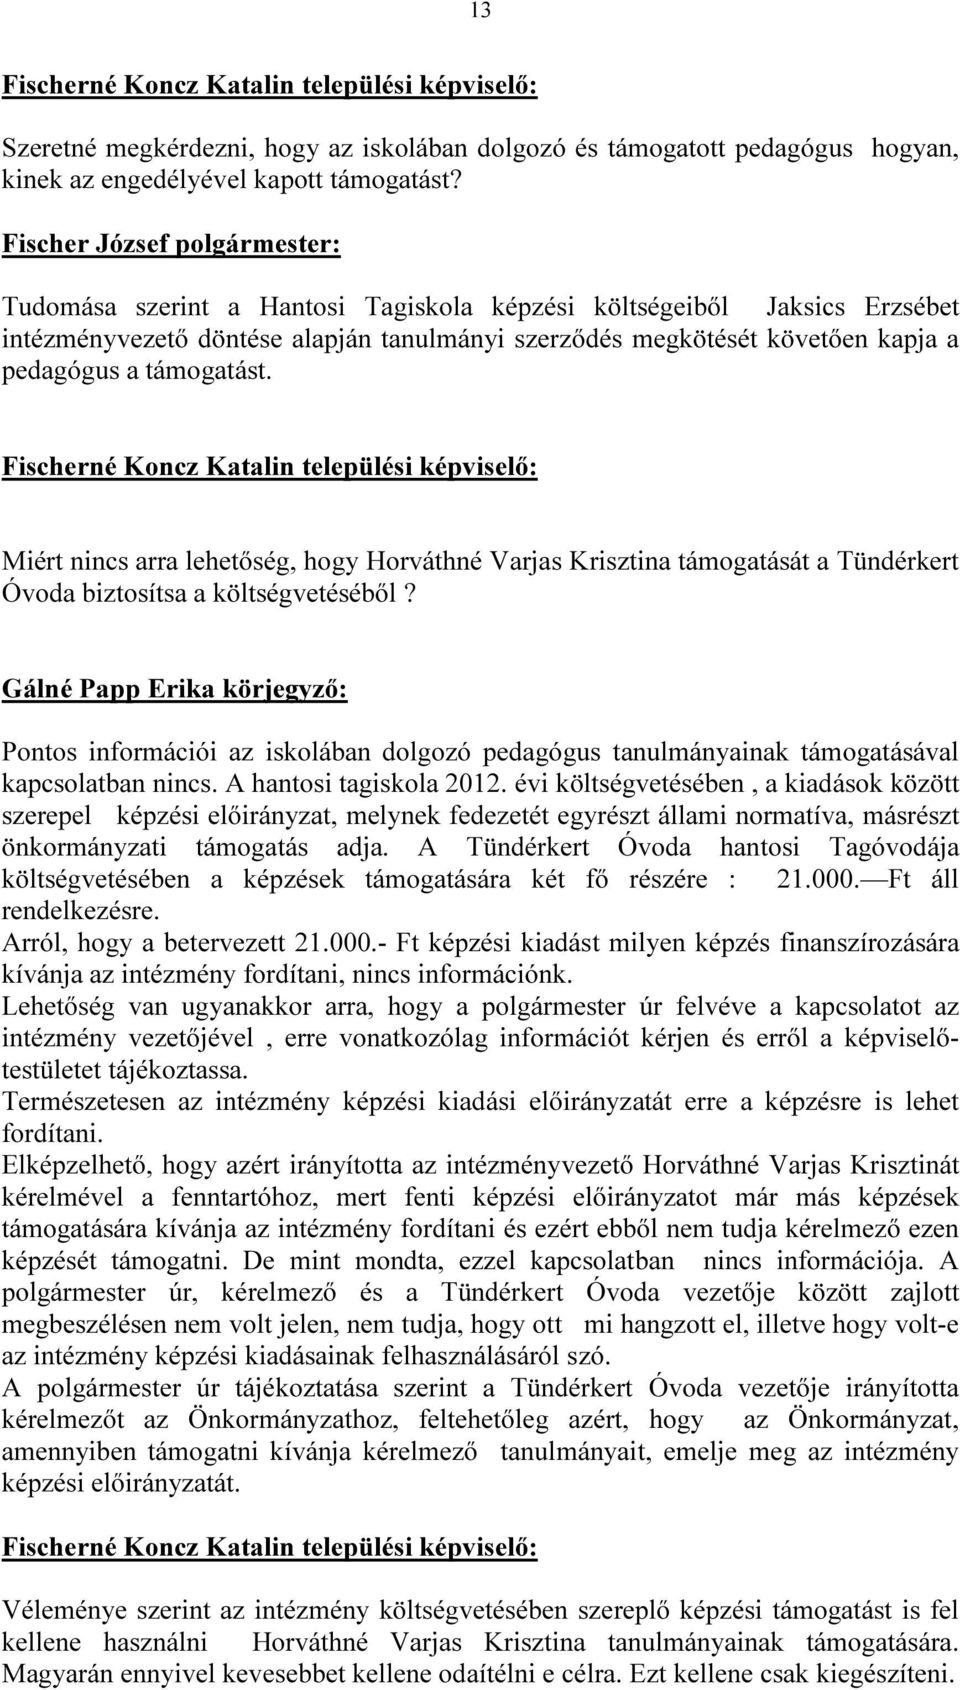 Miért nincs arra lehetőség, hogy Horváthné Varjas Krisztina támogatását a Tündérkert Óvoda biztosítsa a költségvetéséből?